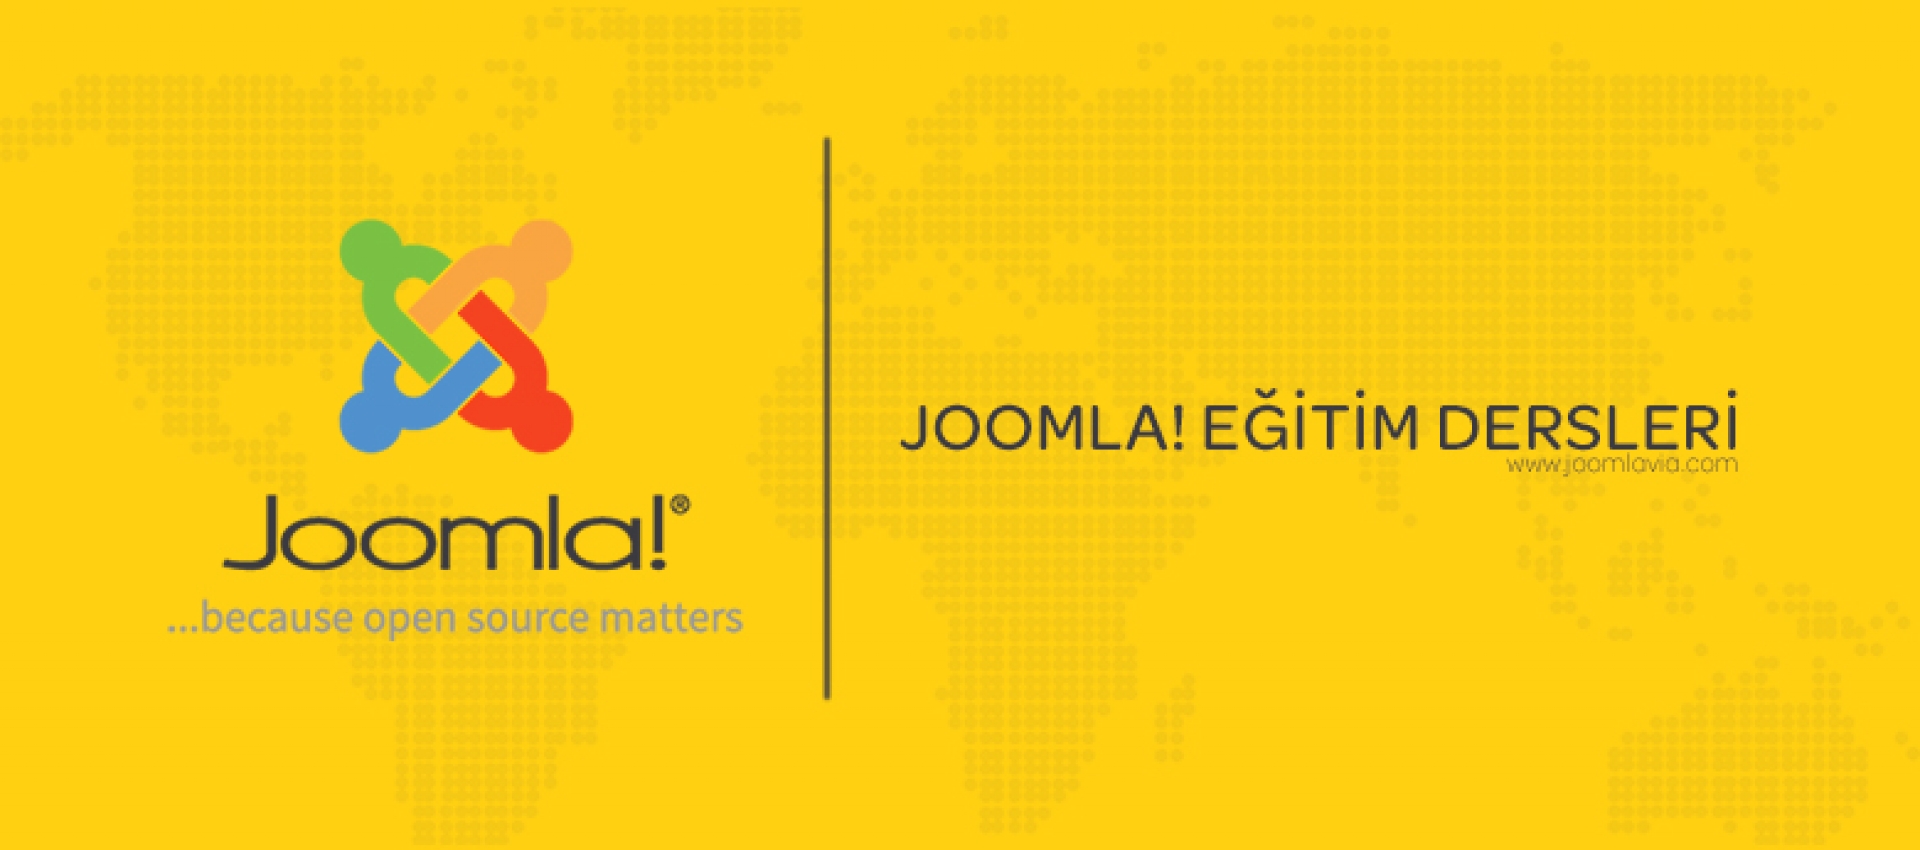 Joomla! Sitenizi Hızlandırmak İçin Önbellek Seçenekleri